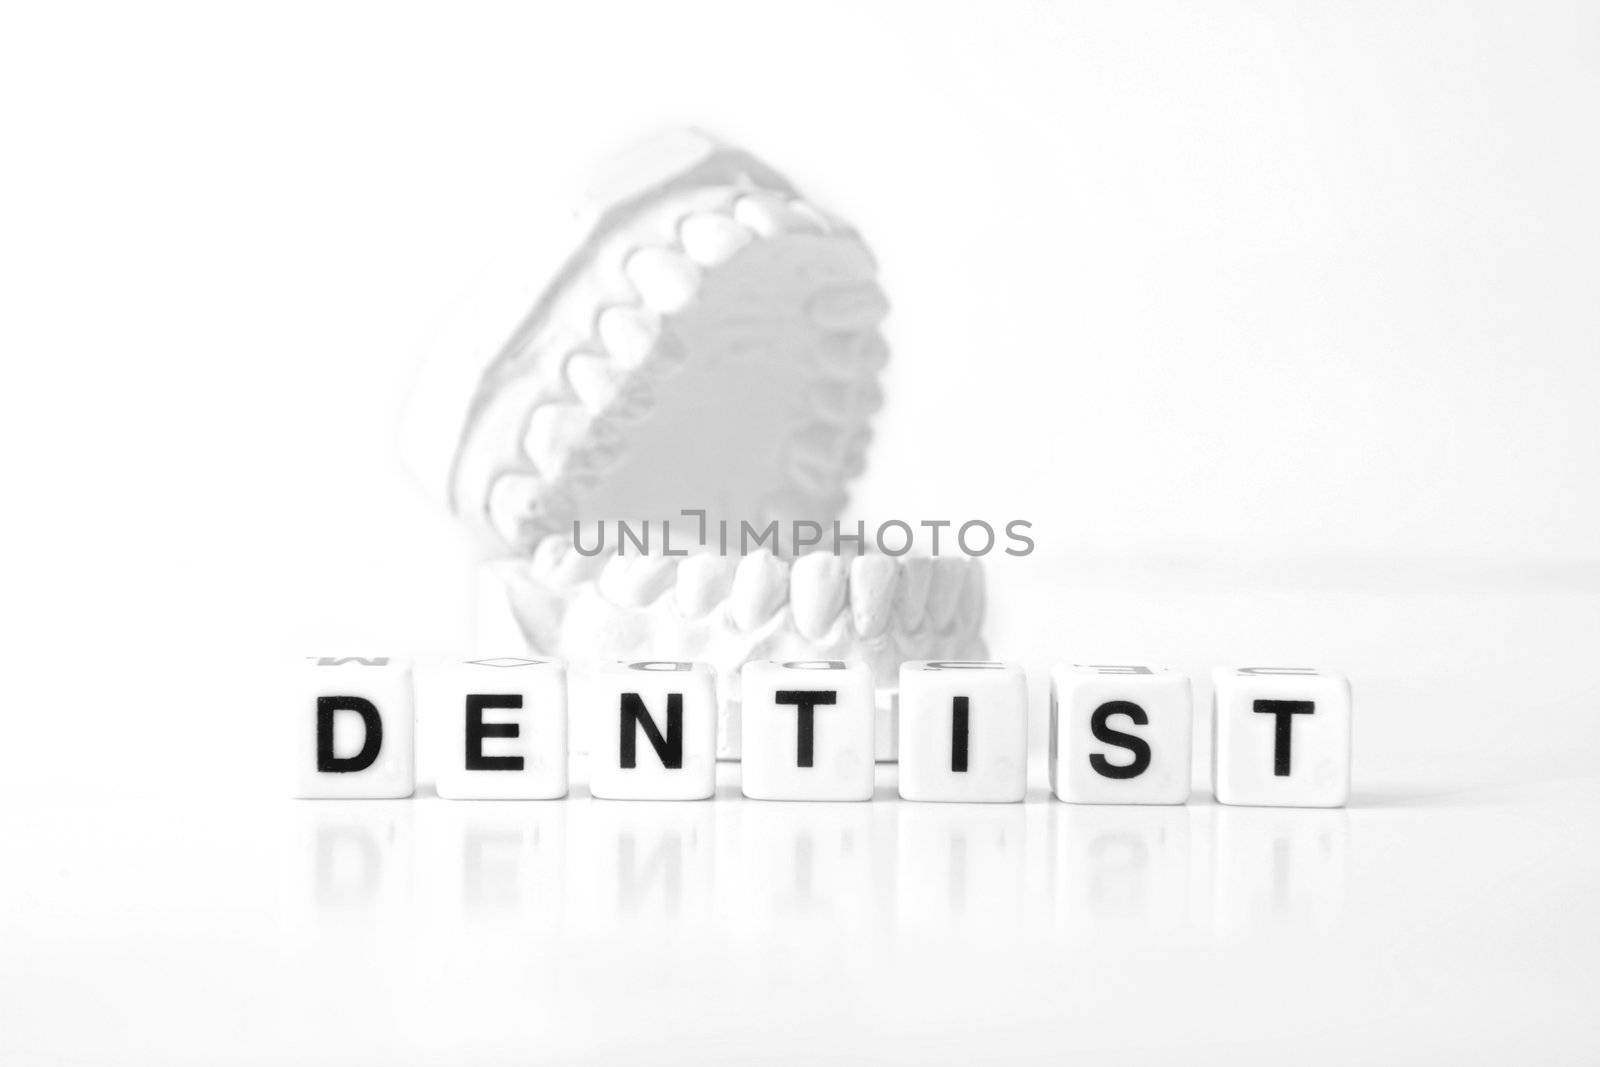 Dentist by kaarsten